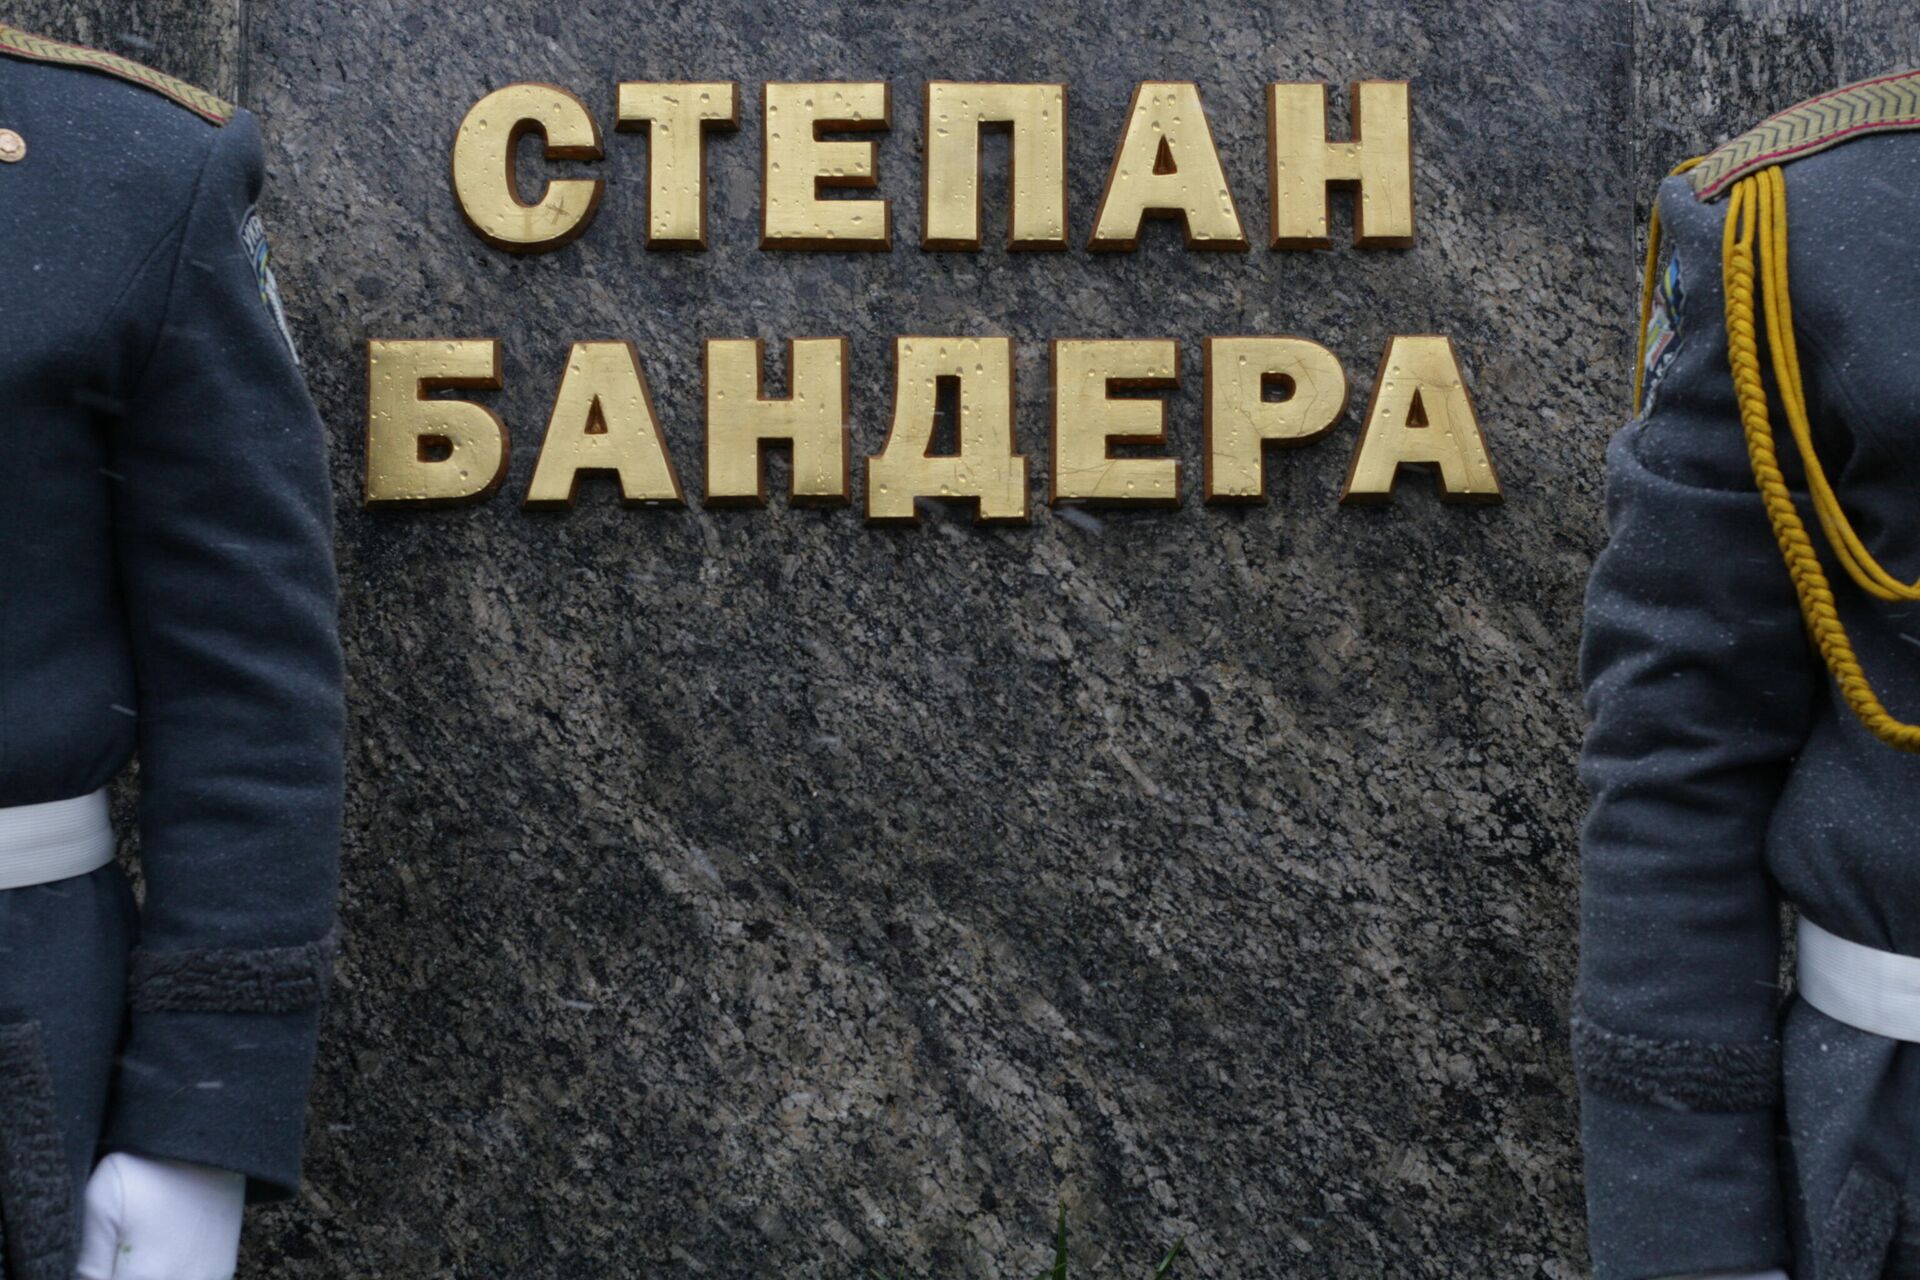 Ceremonija polaganja cveća ukrajinskih vlasti na spomenik Stepanu Banderi  - Sputnik Srbija, 1920, 21.03.2022